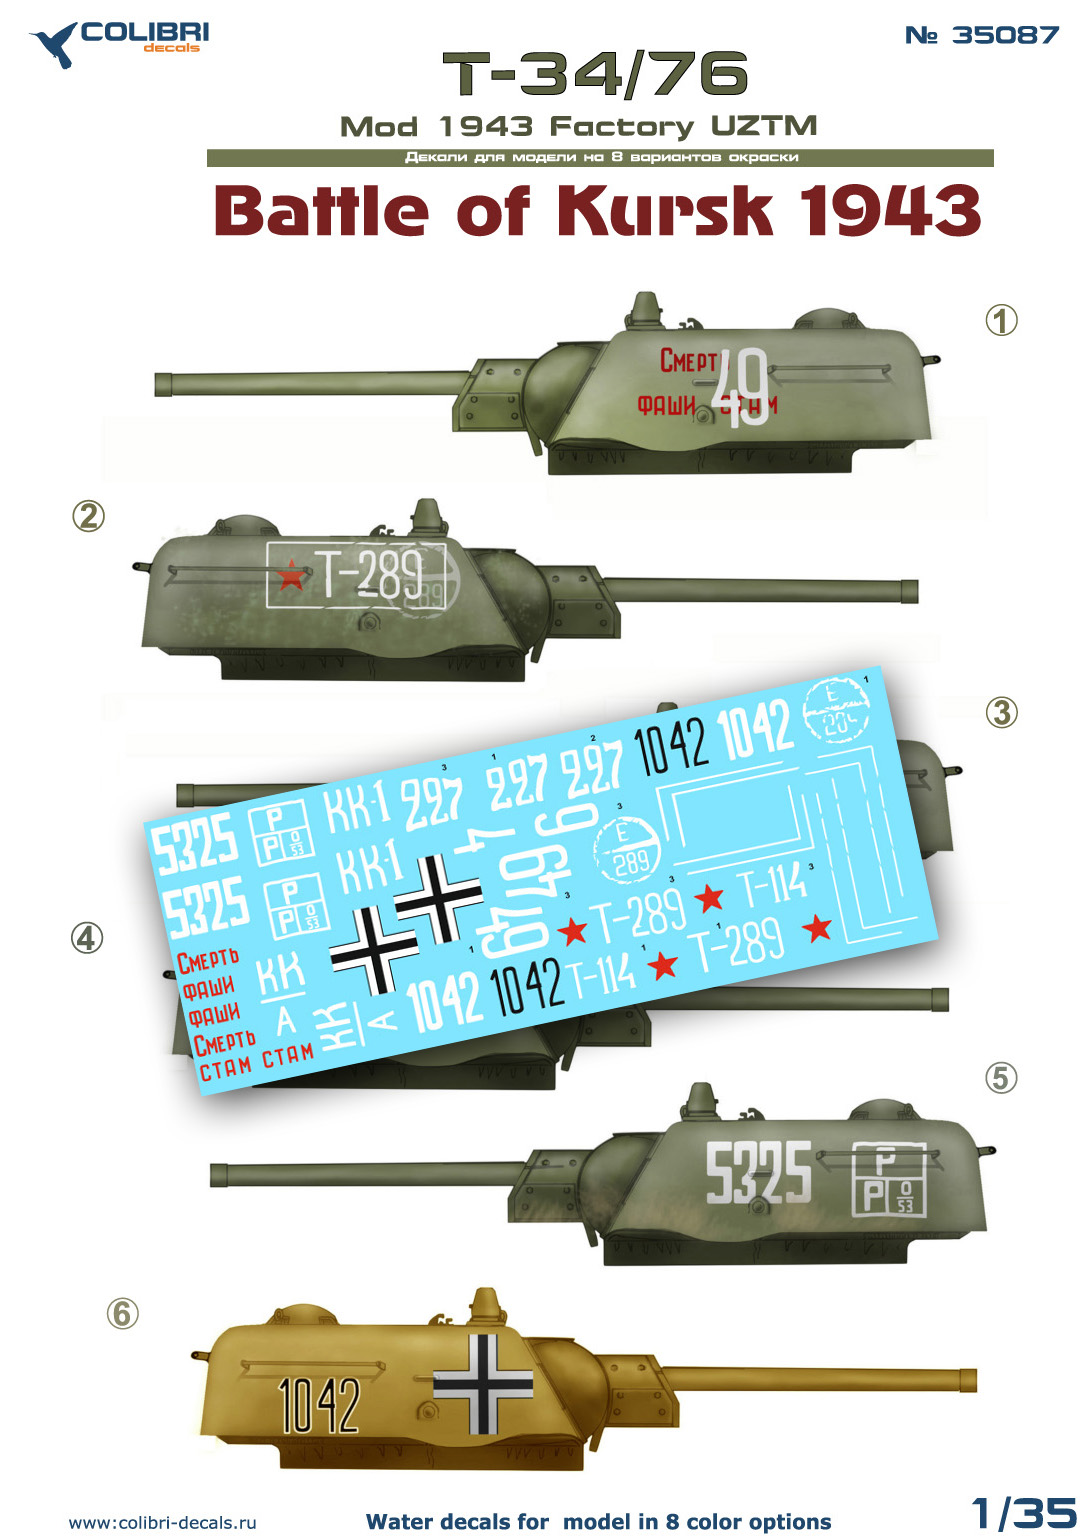 Декаль 1/35 Т-34/76 1943 UZTM Battle of Kursk1943 (Colibri Decals)